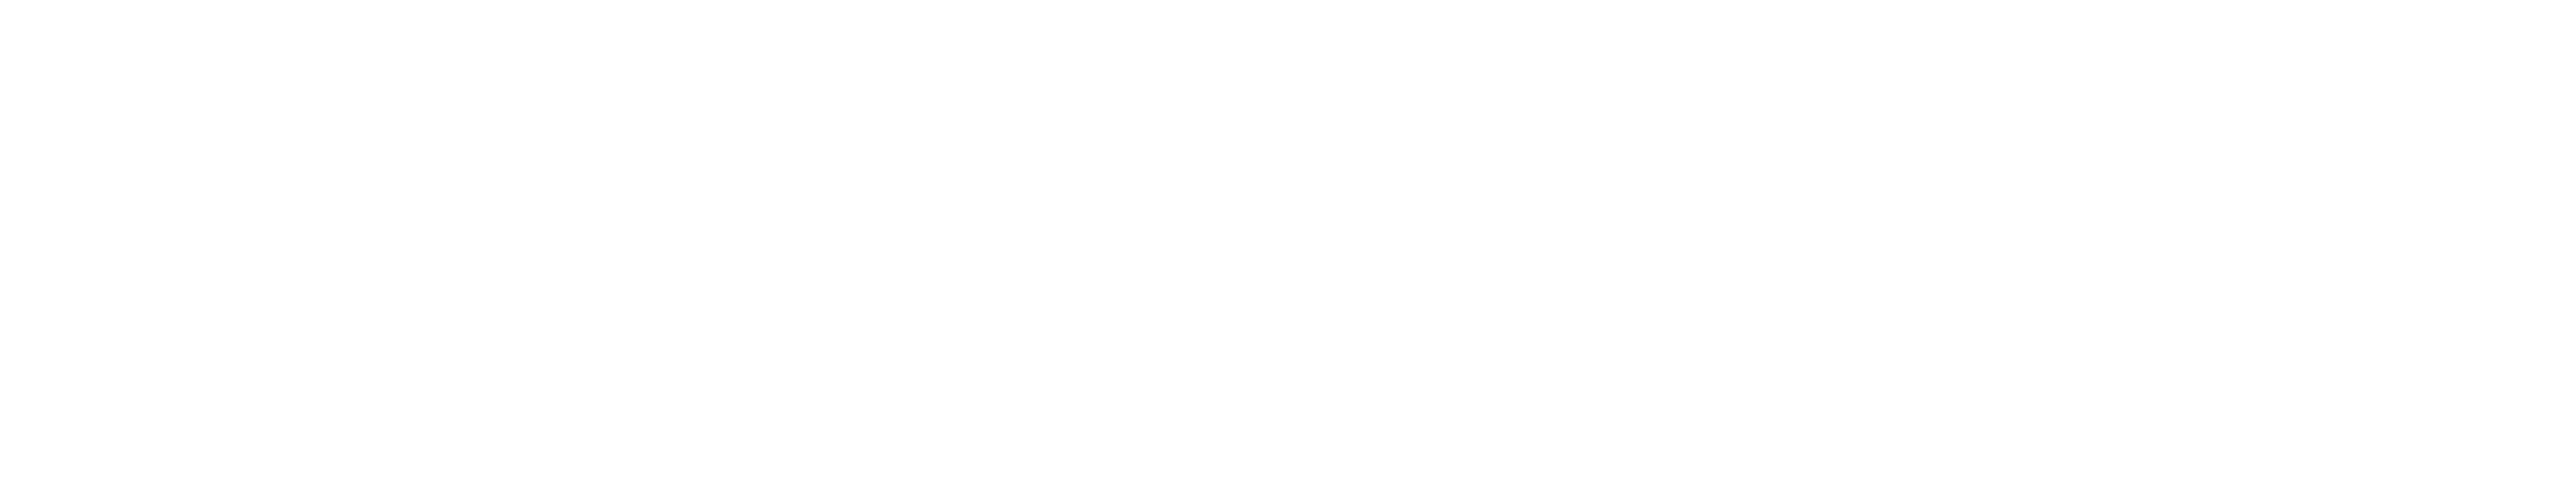 logo-header-white